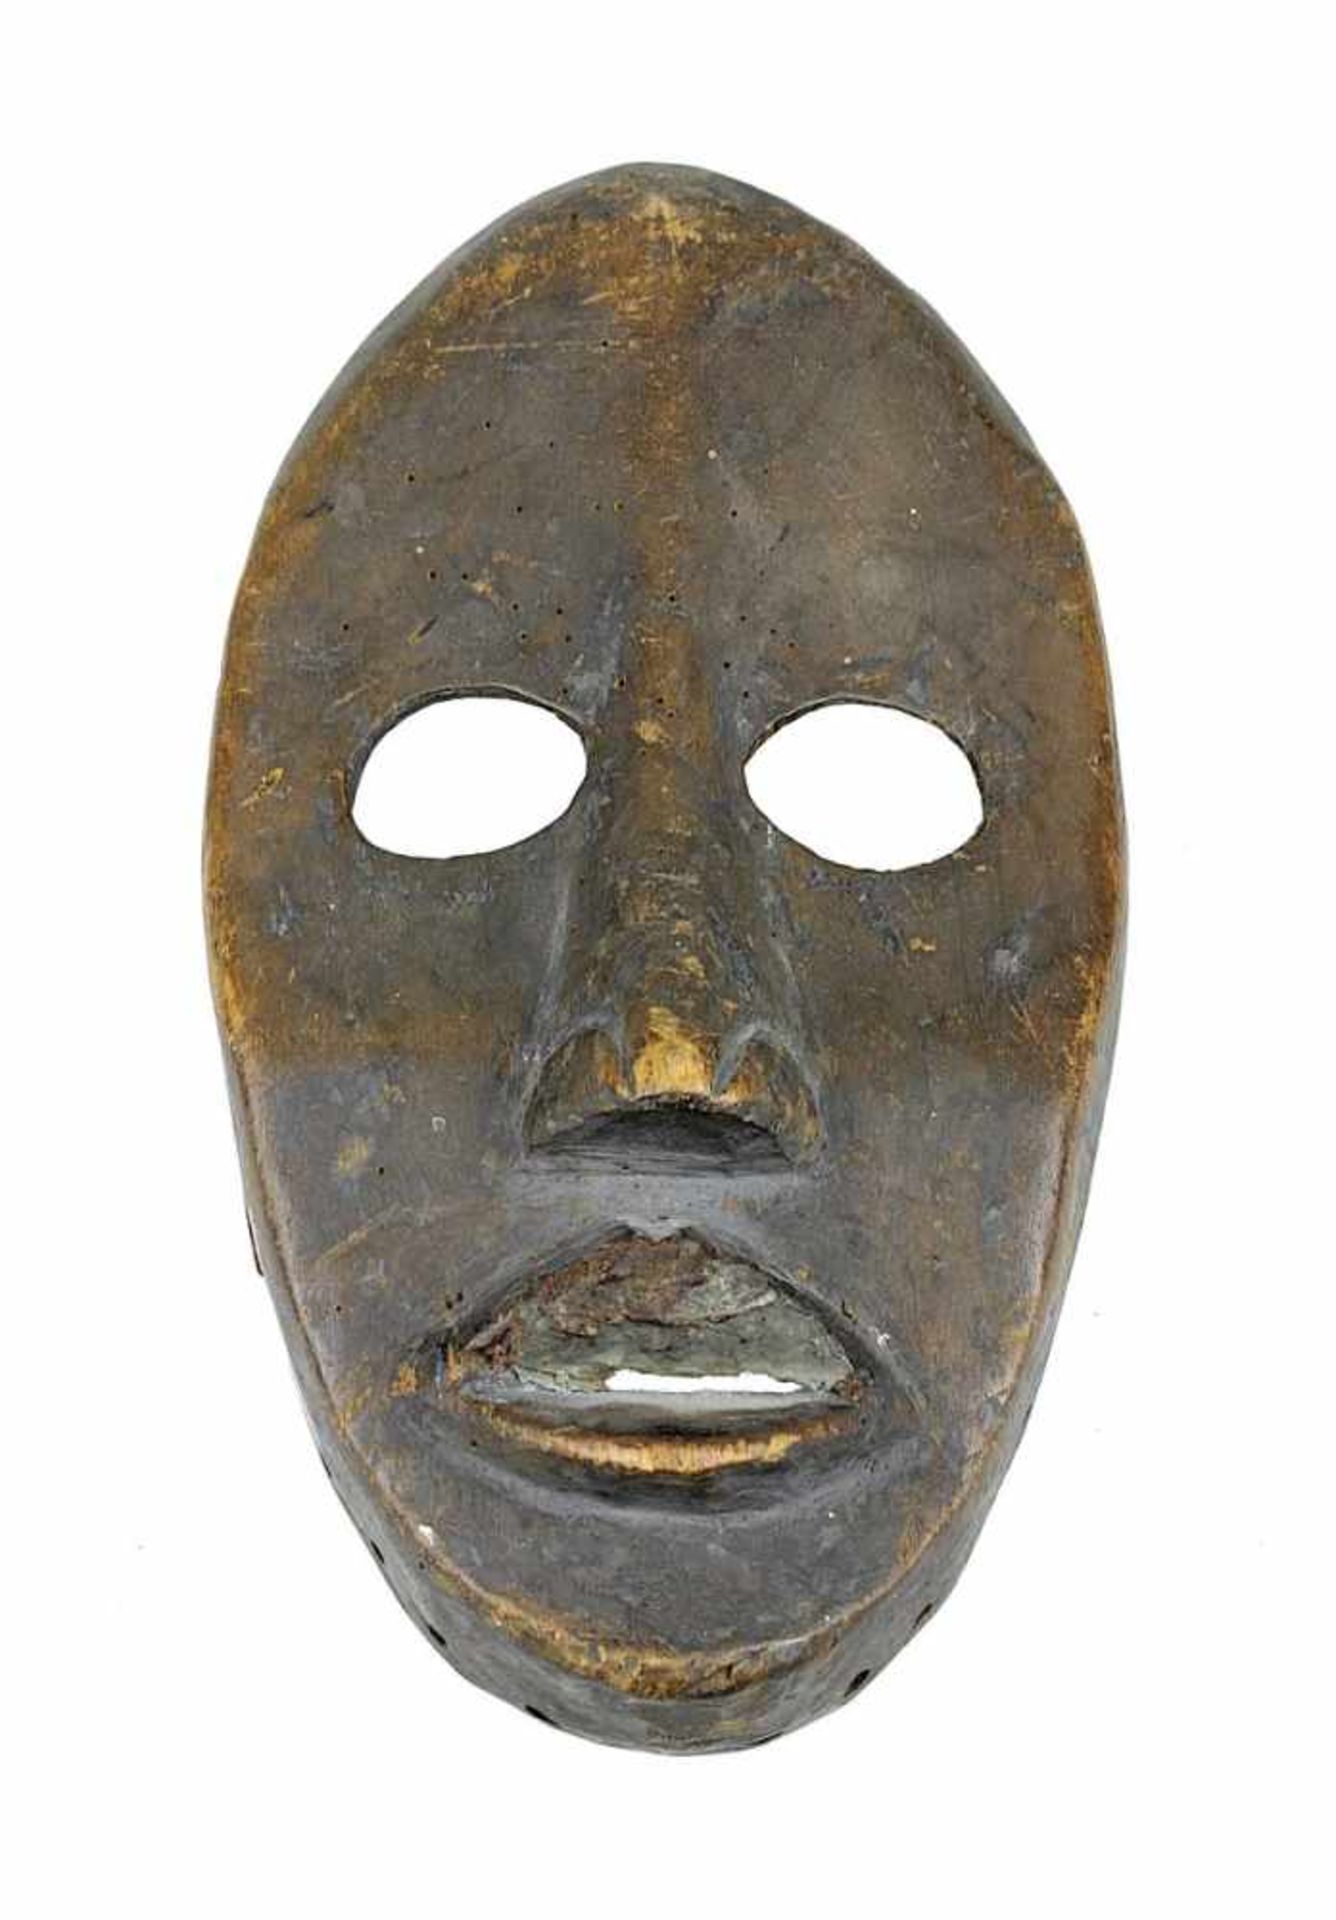 Gesichtsmaske der Dan, Côte d'Ivoire, helles Holz dunkel gefärbt, schmales Gesicht mit großen oval